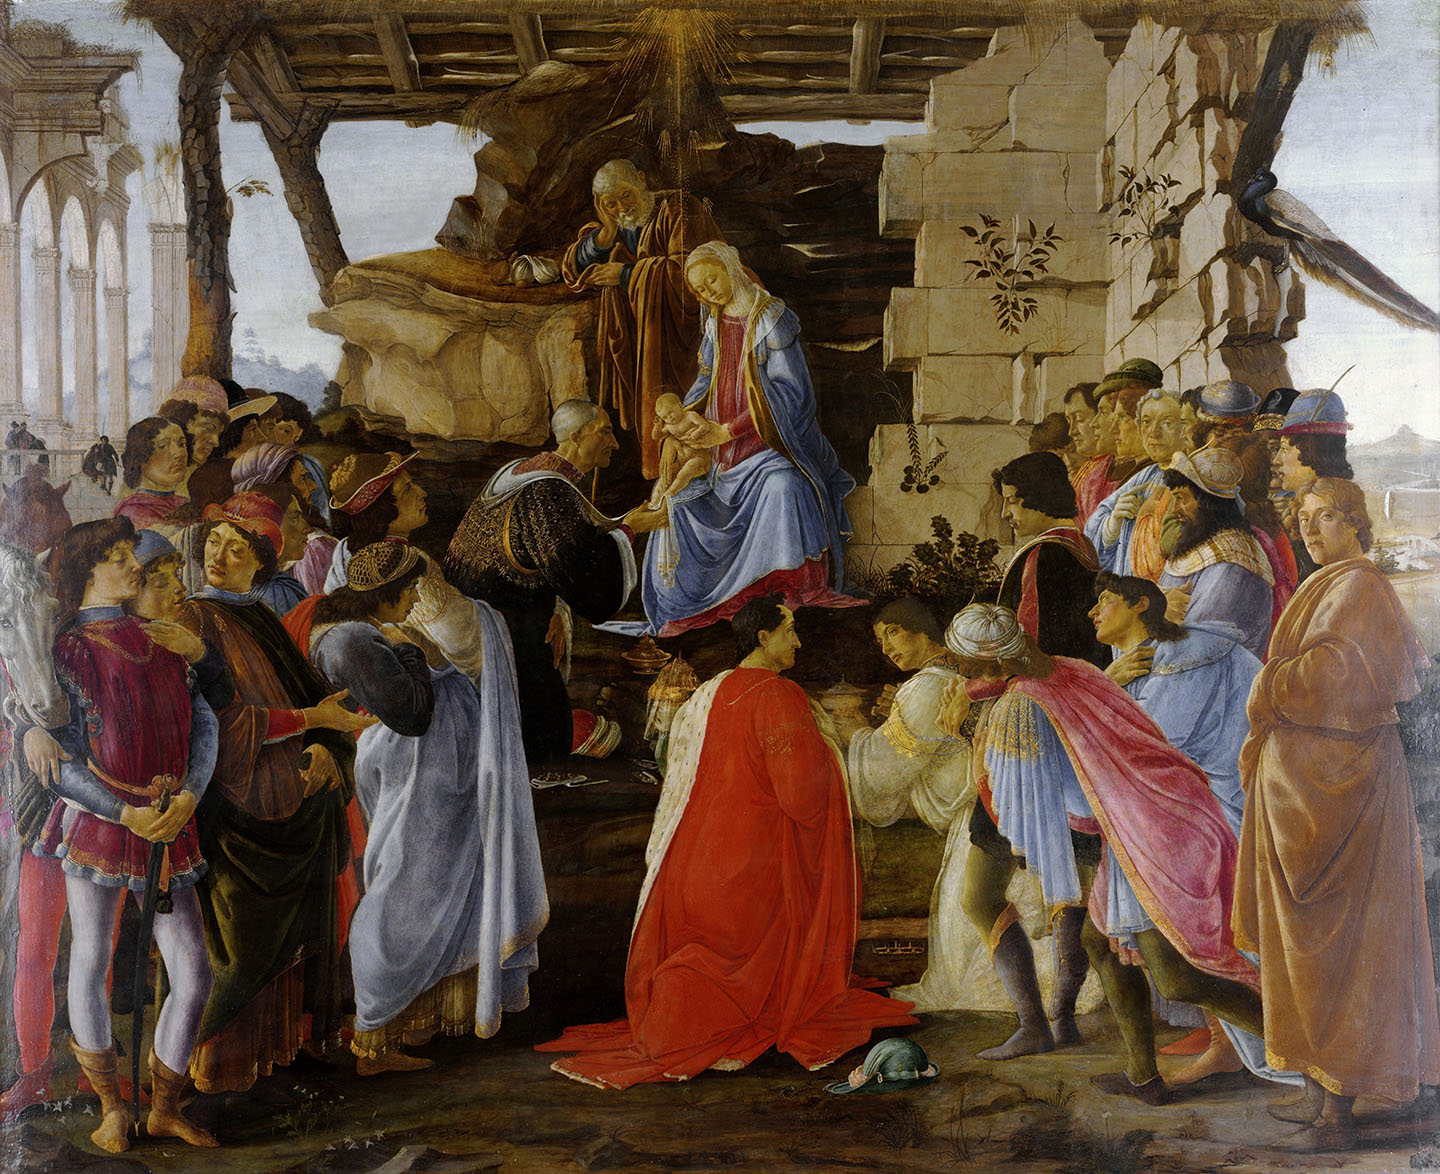 Tác phẩm “Adoration of the Magi” (Sự thờ phụng của ba nhà thông thái), danh họa Sandro Botticelli, vẽ khoảng năm 1475 –1476. Màu keo tempera trên khung. Phòng trưng bày Uffizi, Florence, Ý. (Ảnh: Tài liệu công cộng)